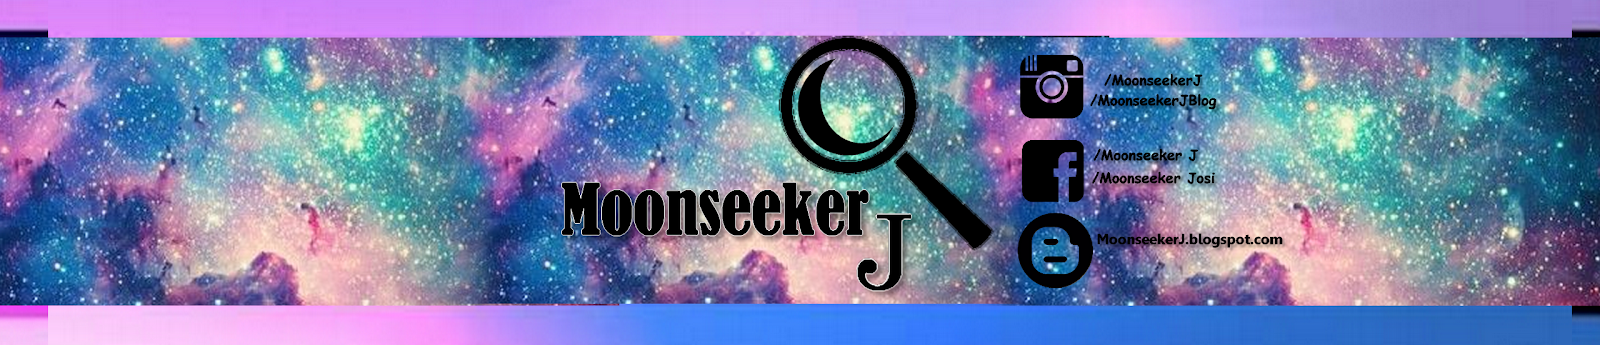 MoonSeeker J